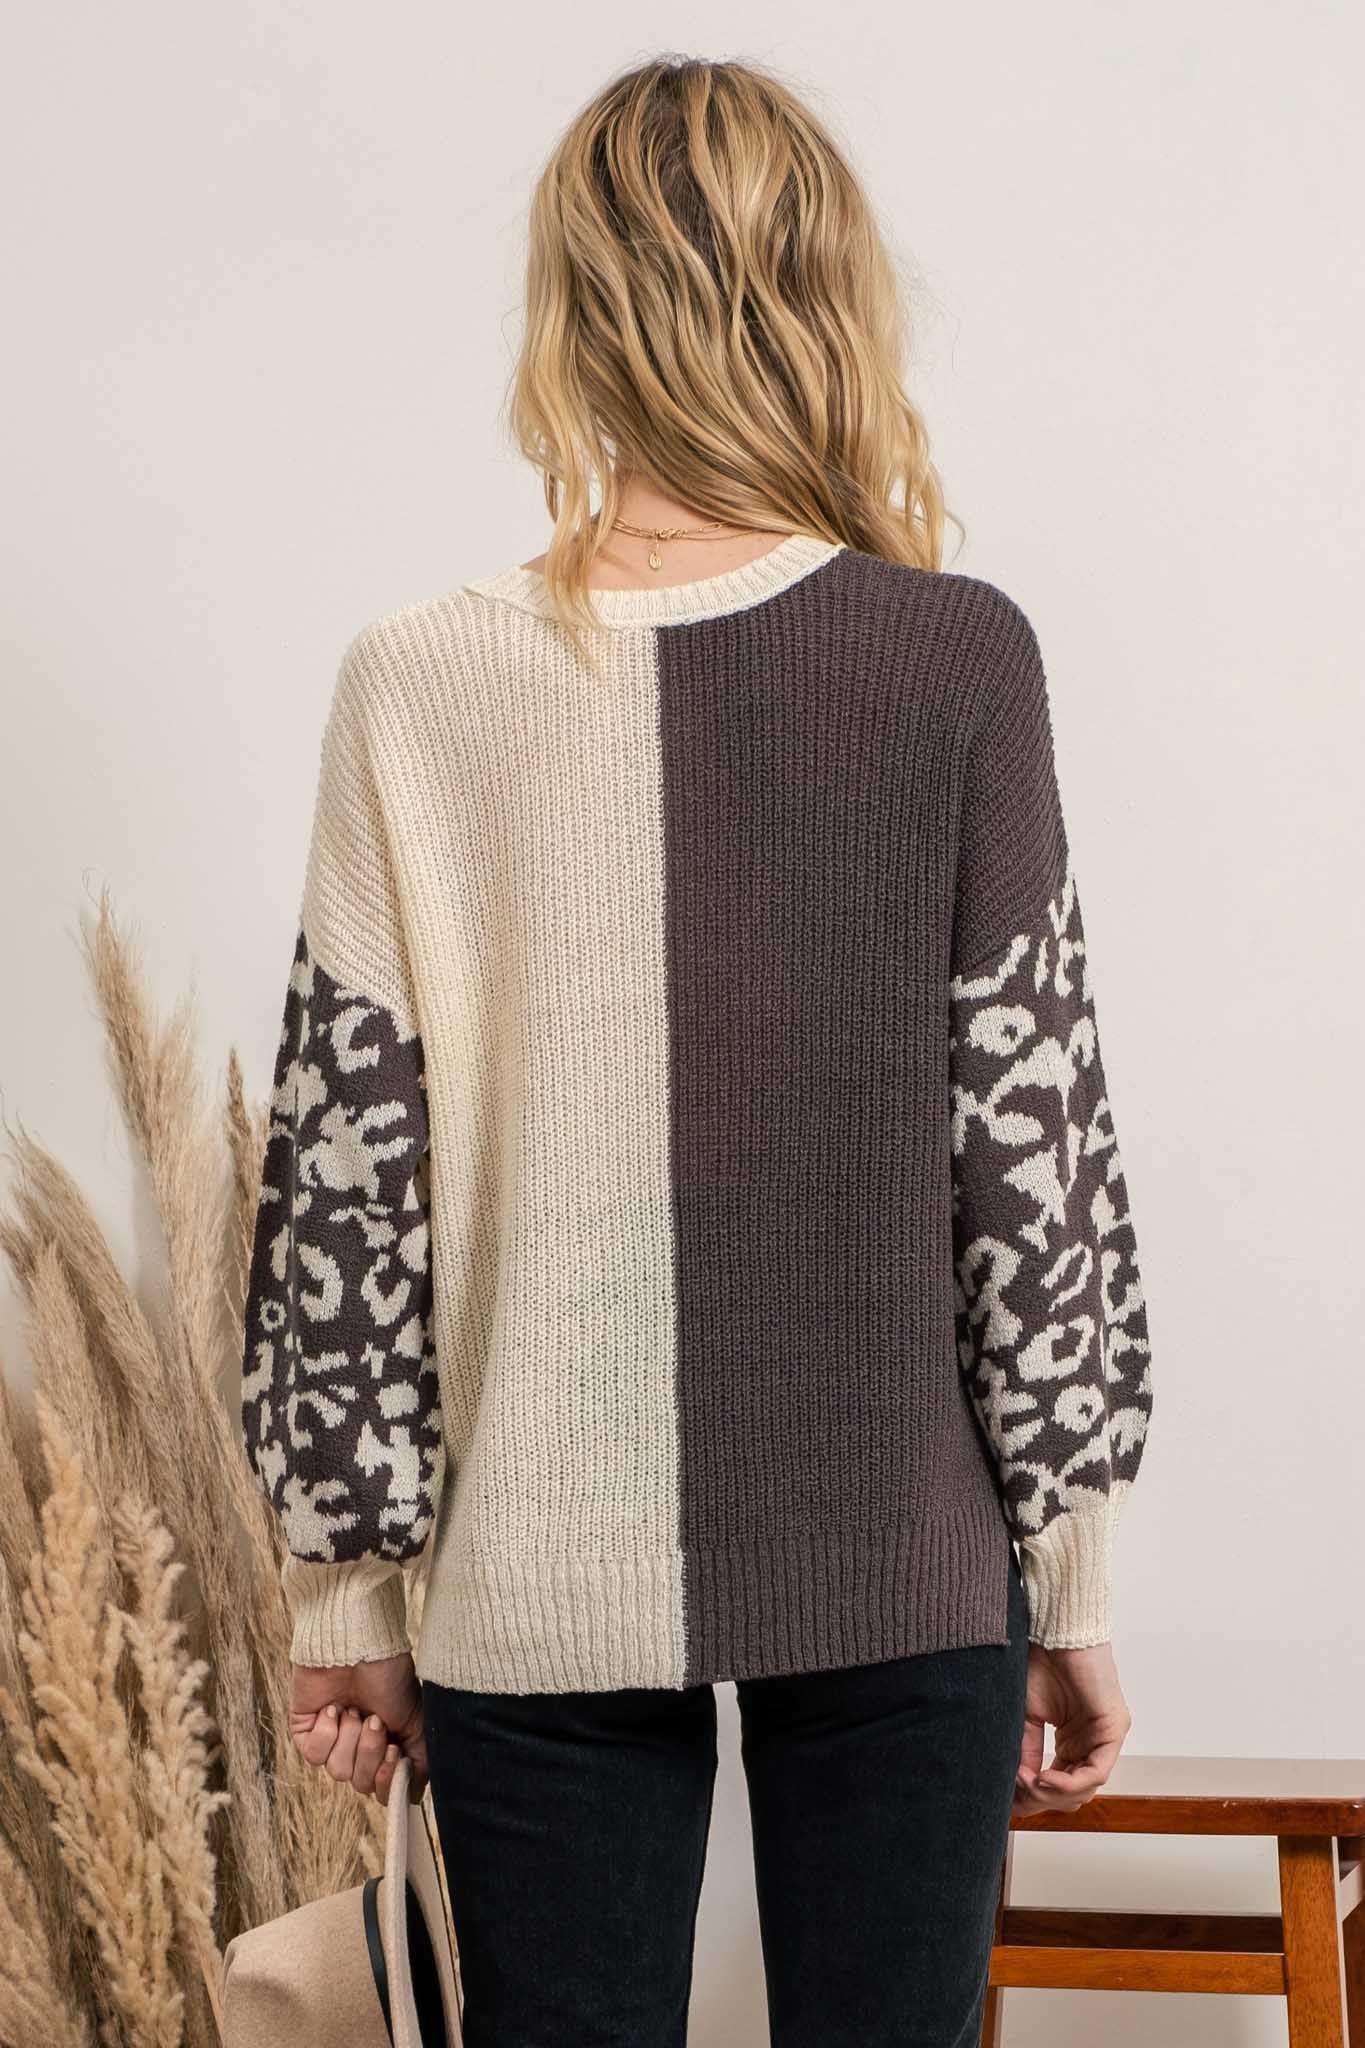 Cami Colorblock Sweater